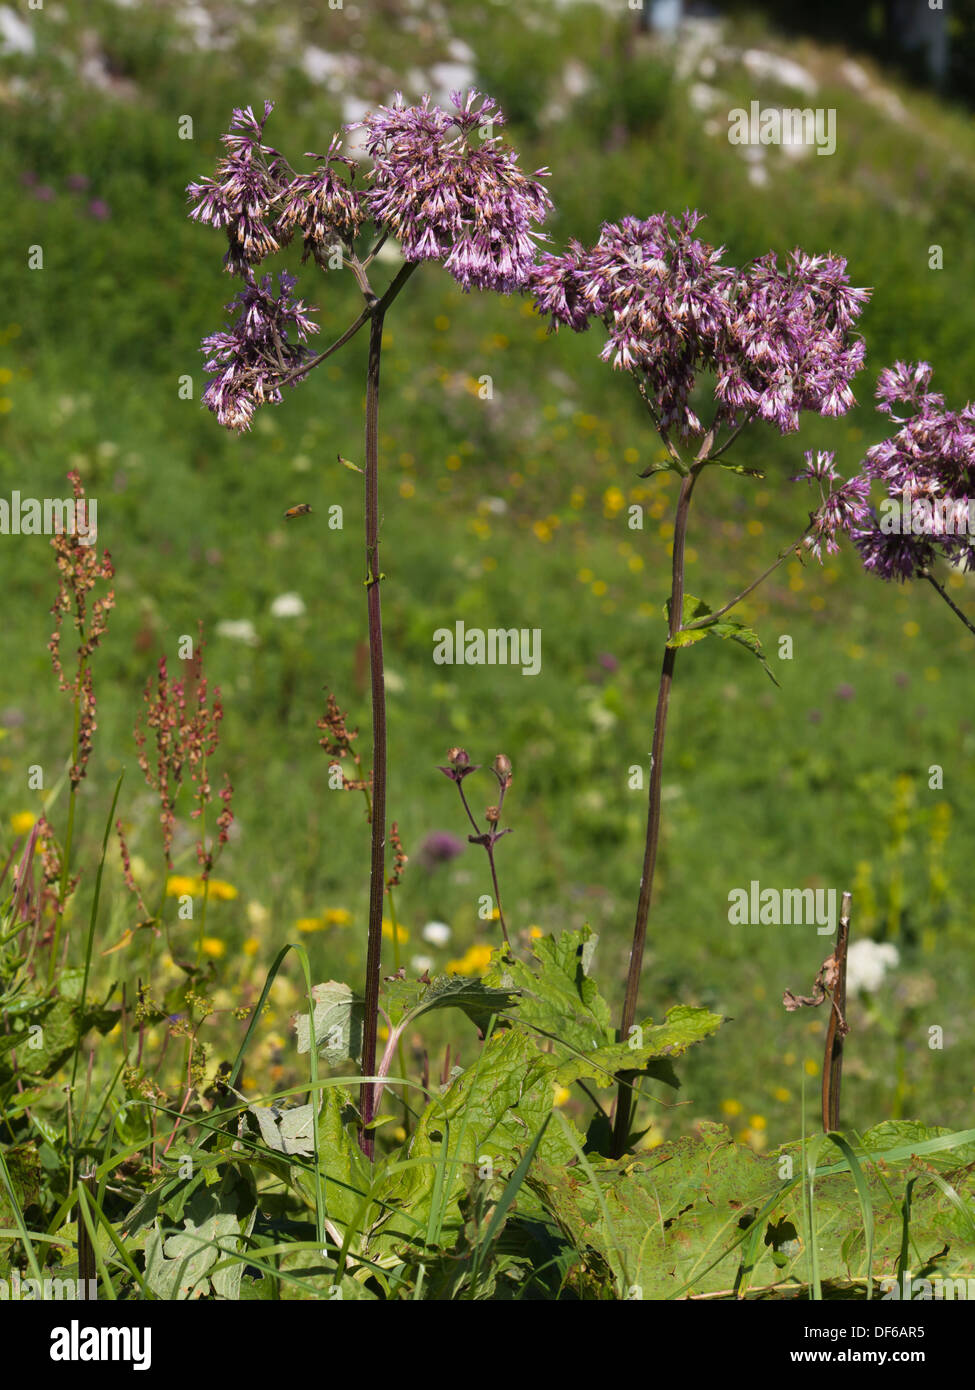 Probablement Adenostyles alliariae fleurs alpestres dans une prairie de montagne suisse Banque D'Images